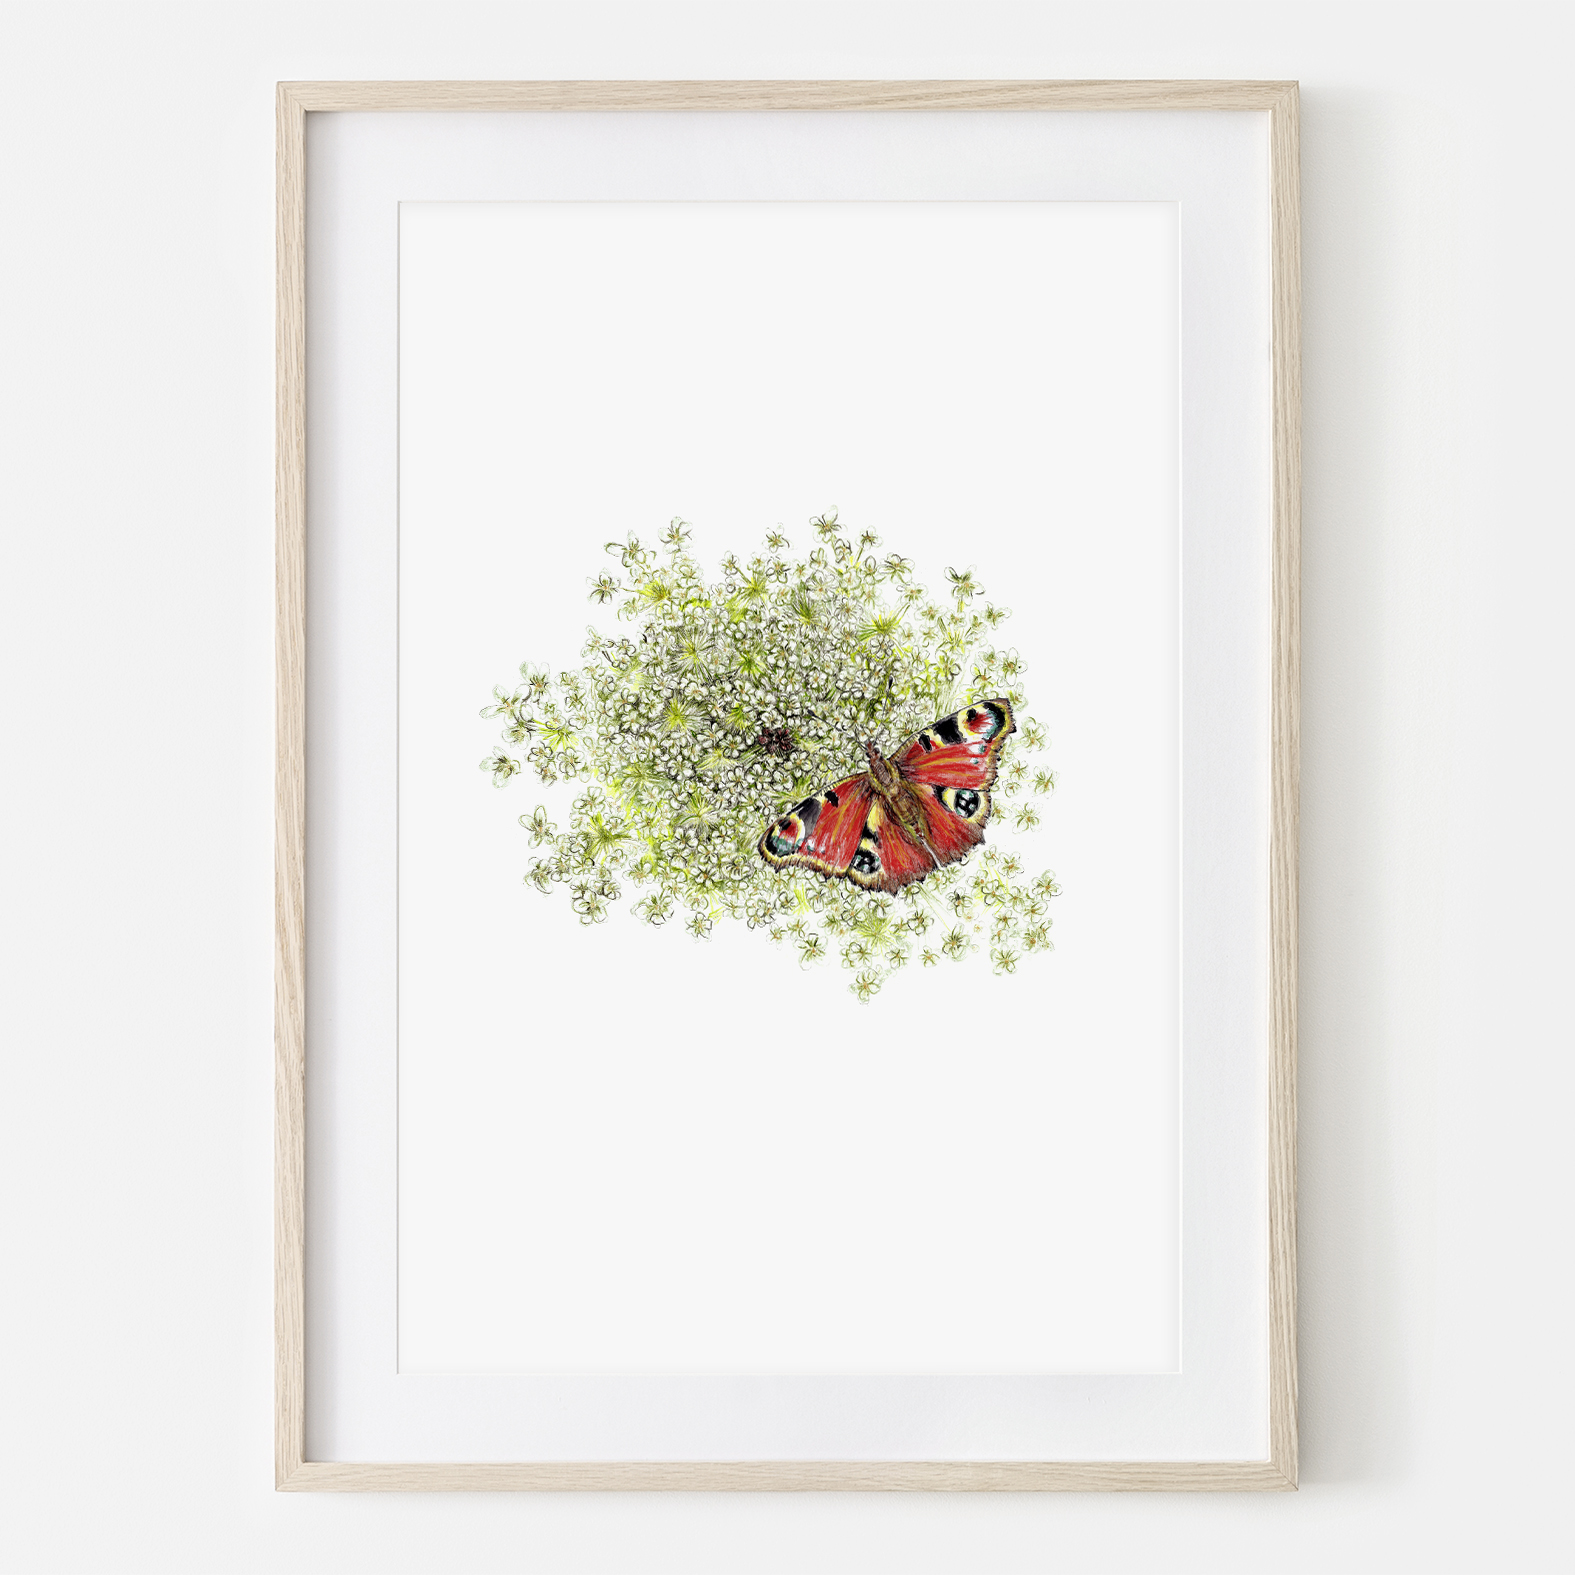 Wilde Möhre mit Schmetterling Fine Art Print Giclée Print Poster Kunstdruck Pflanzen Zeichnung